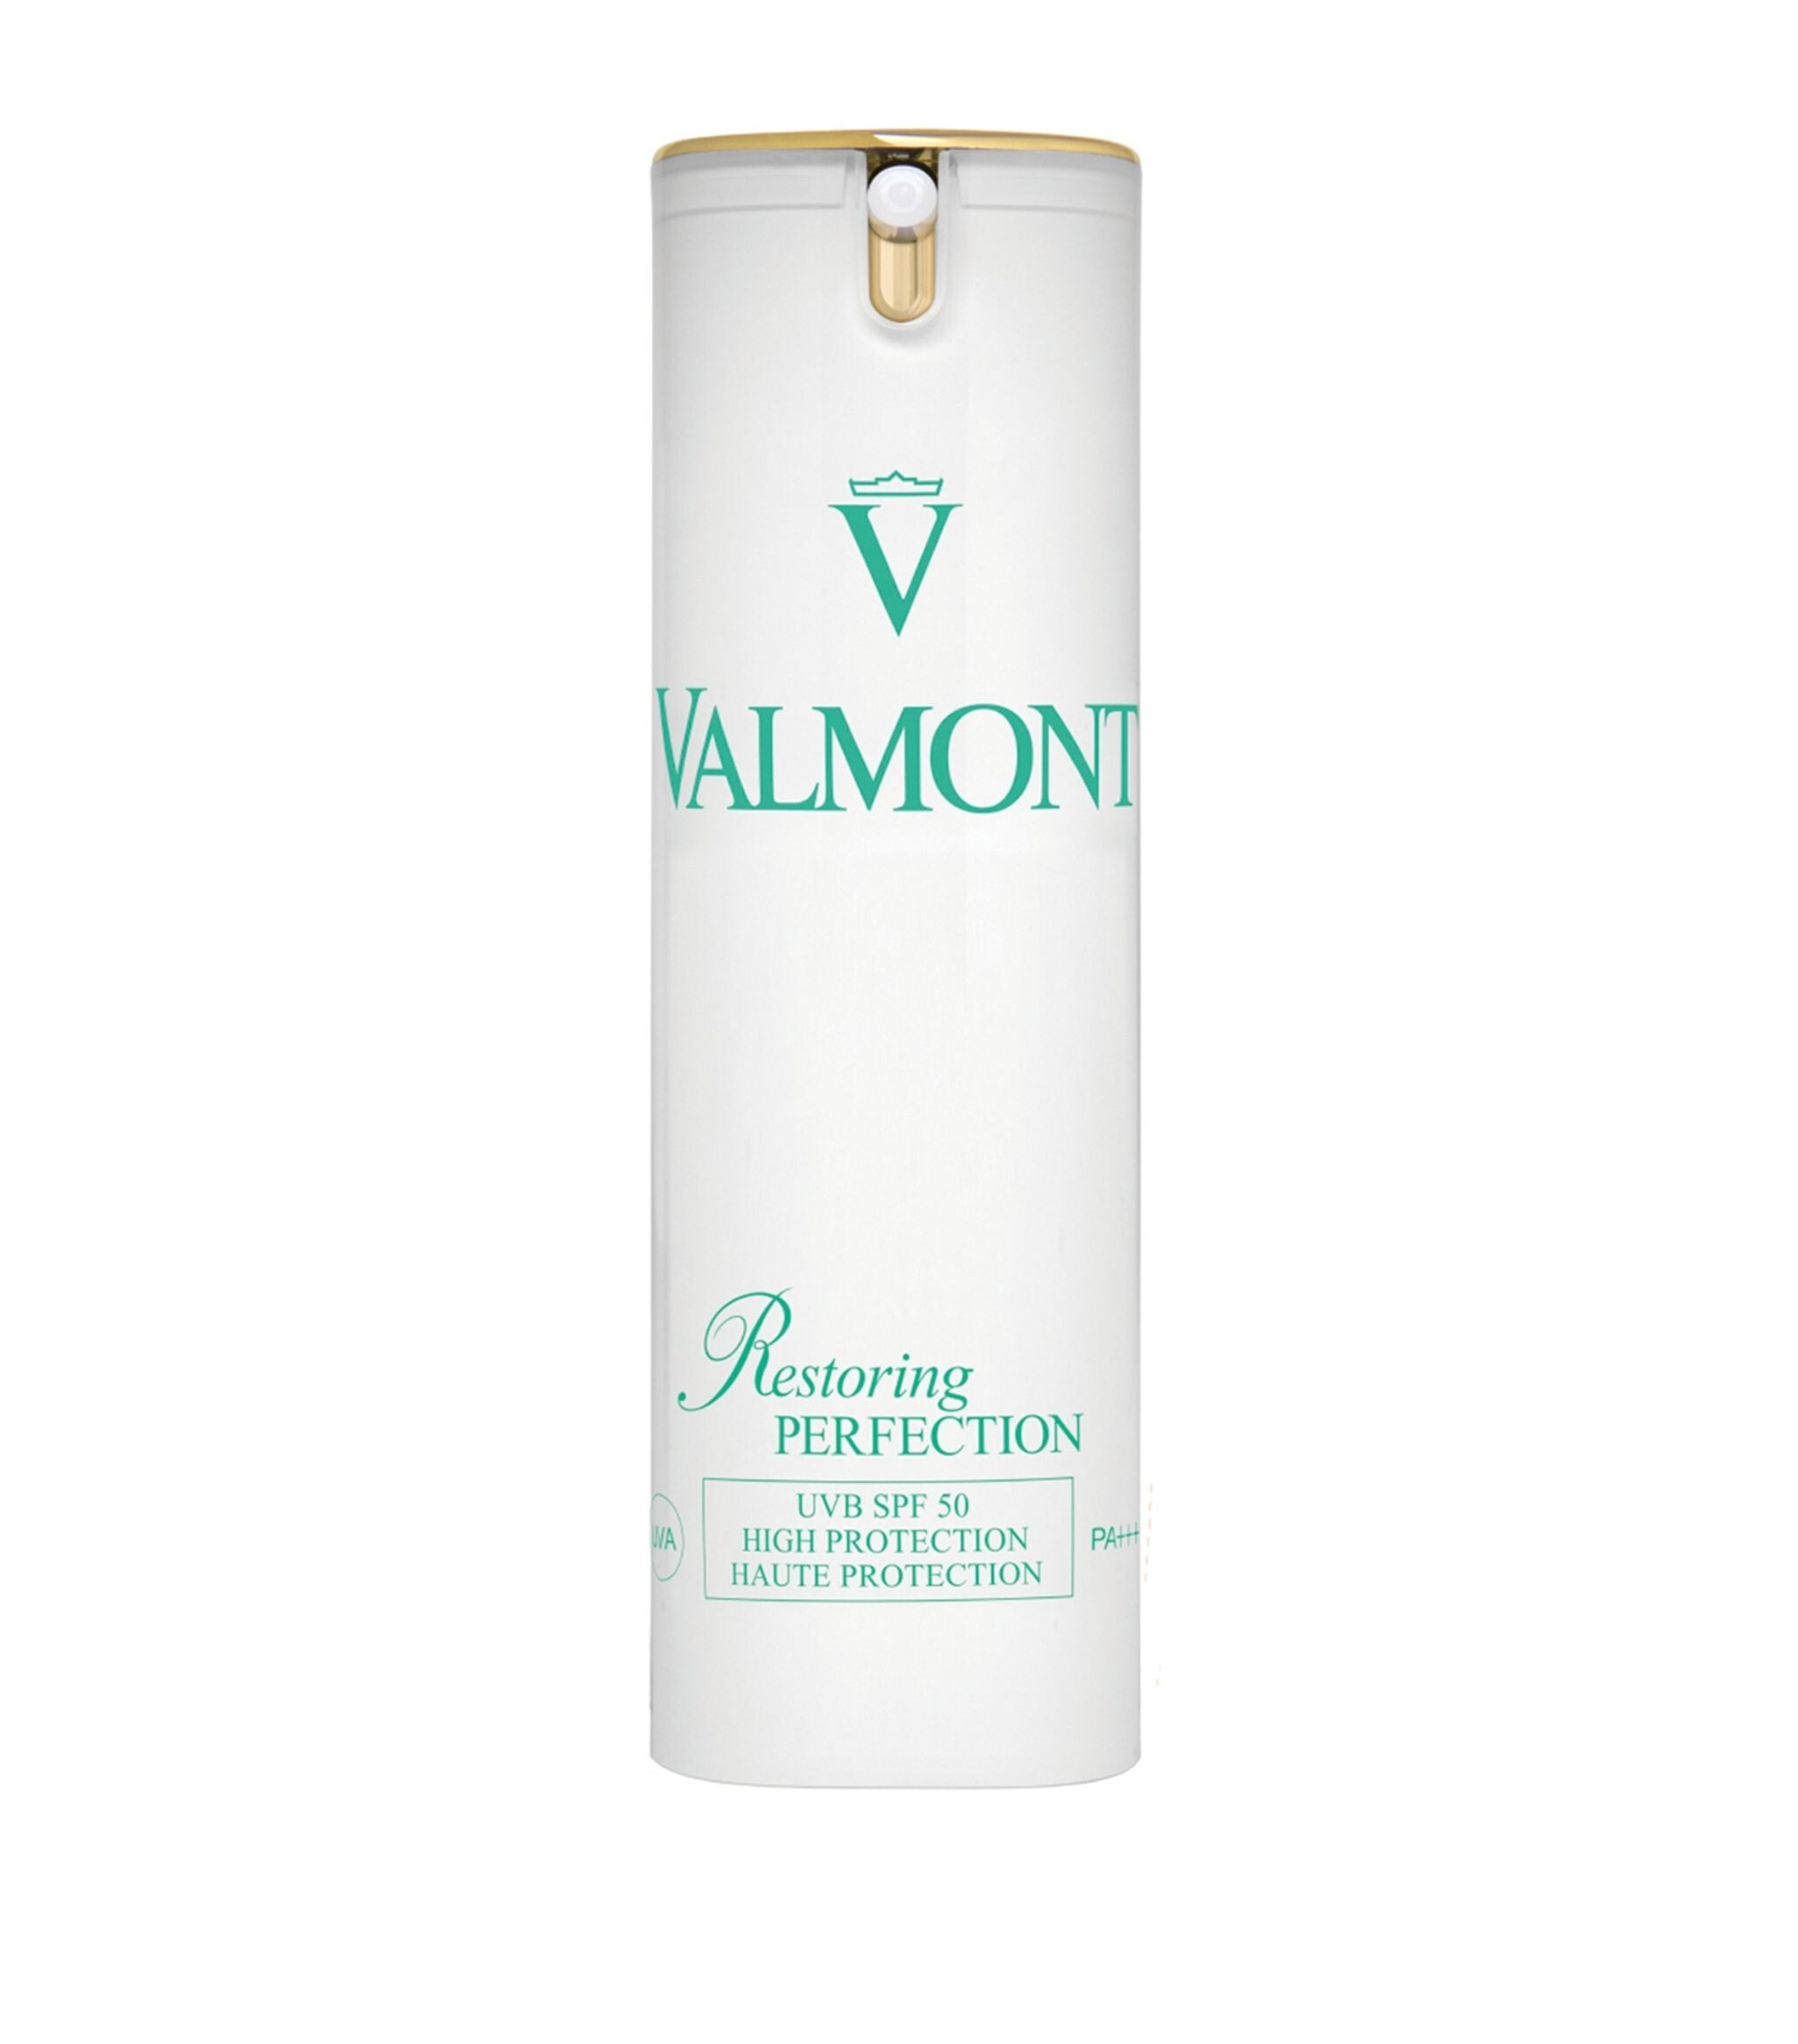 Valmont Restoring Perfection SPF50 Восстанавливающий солнцезащитный крем для лица 30 мл